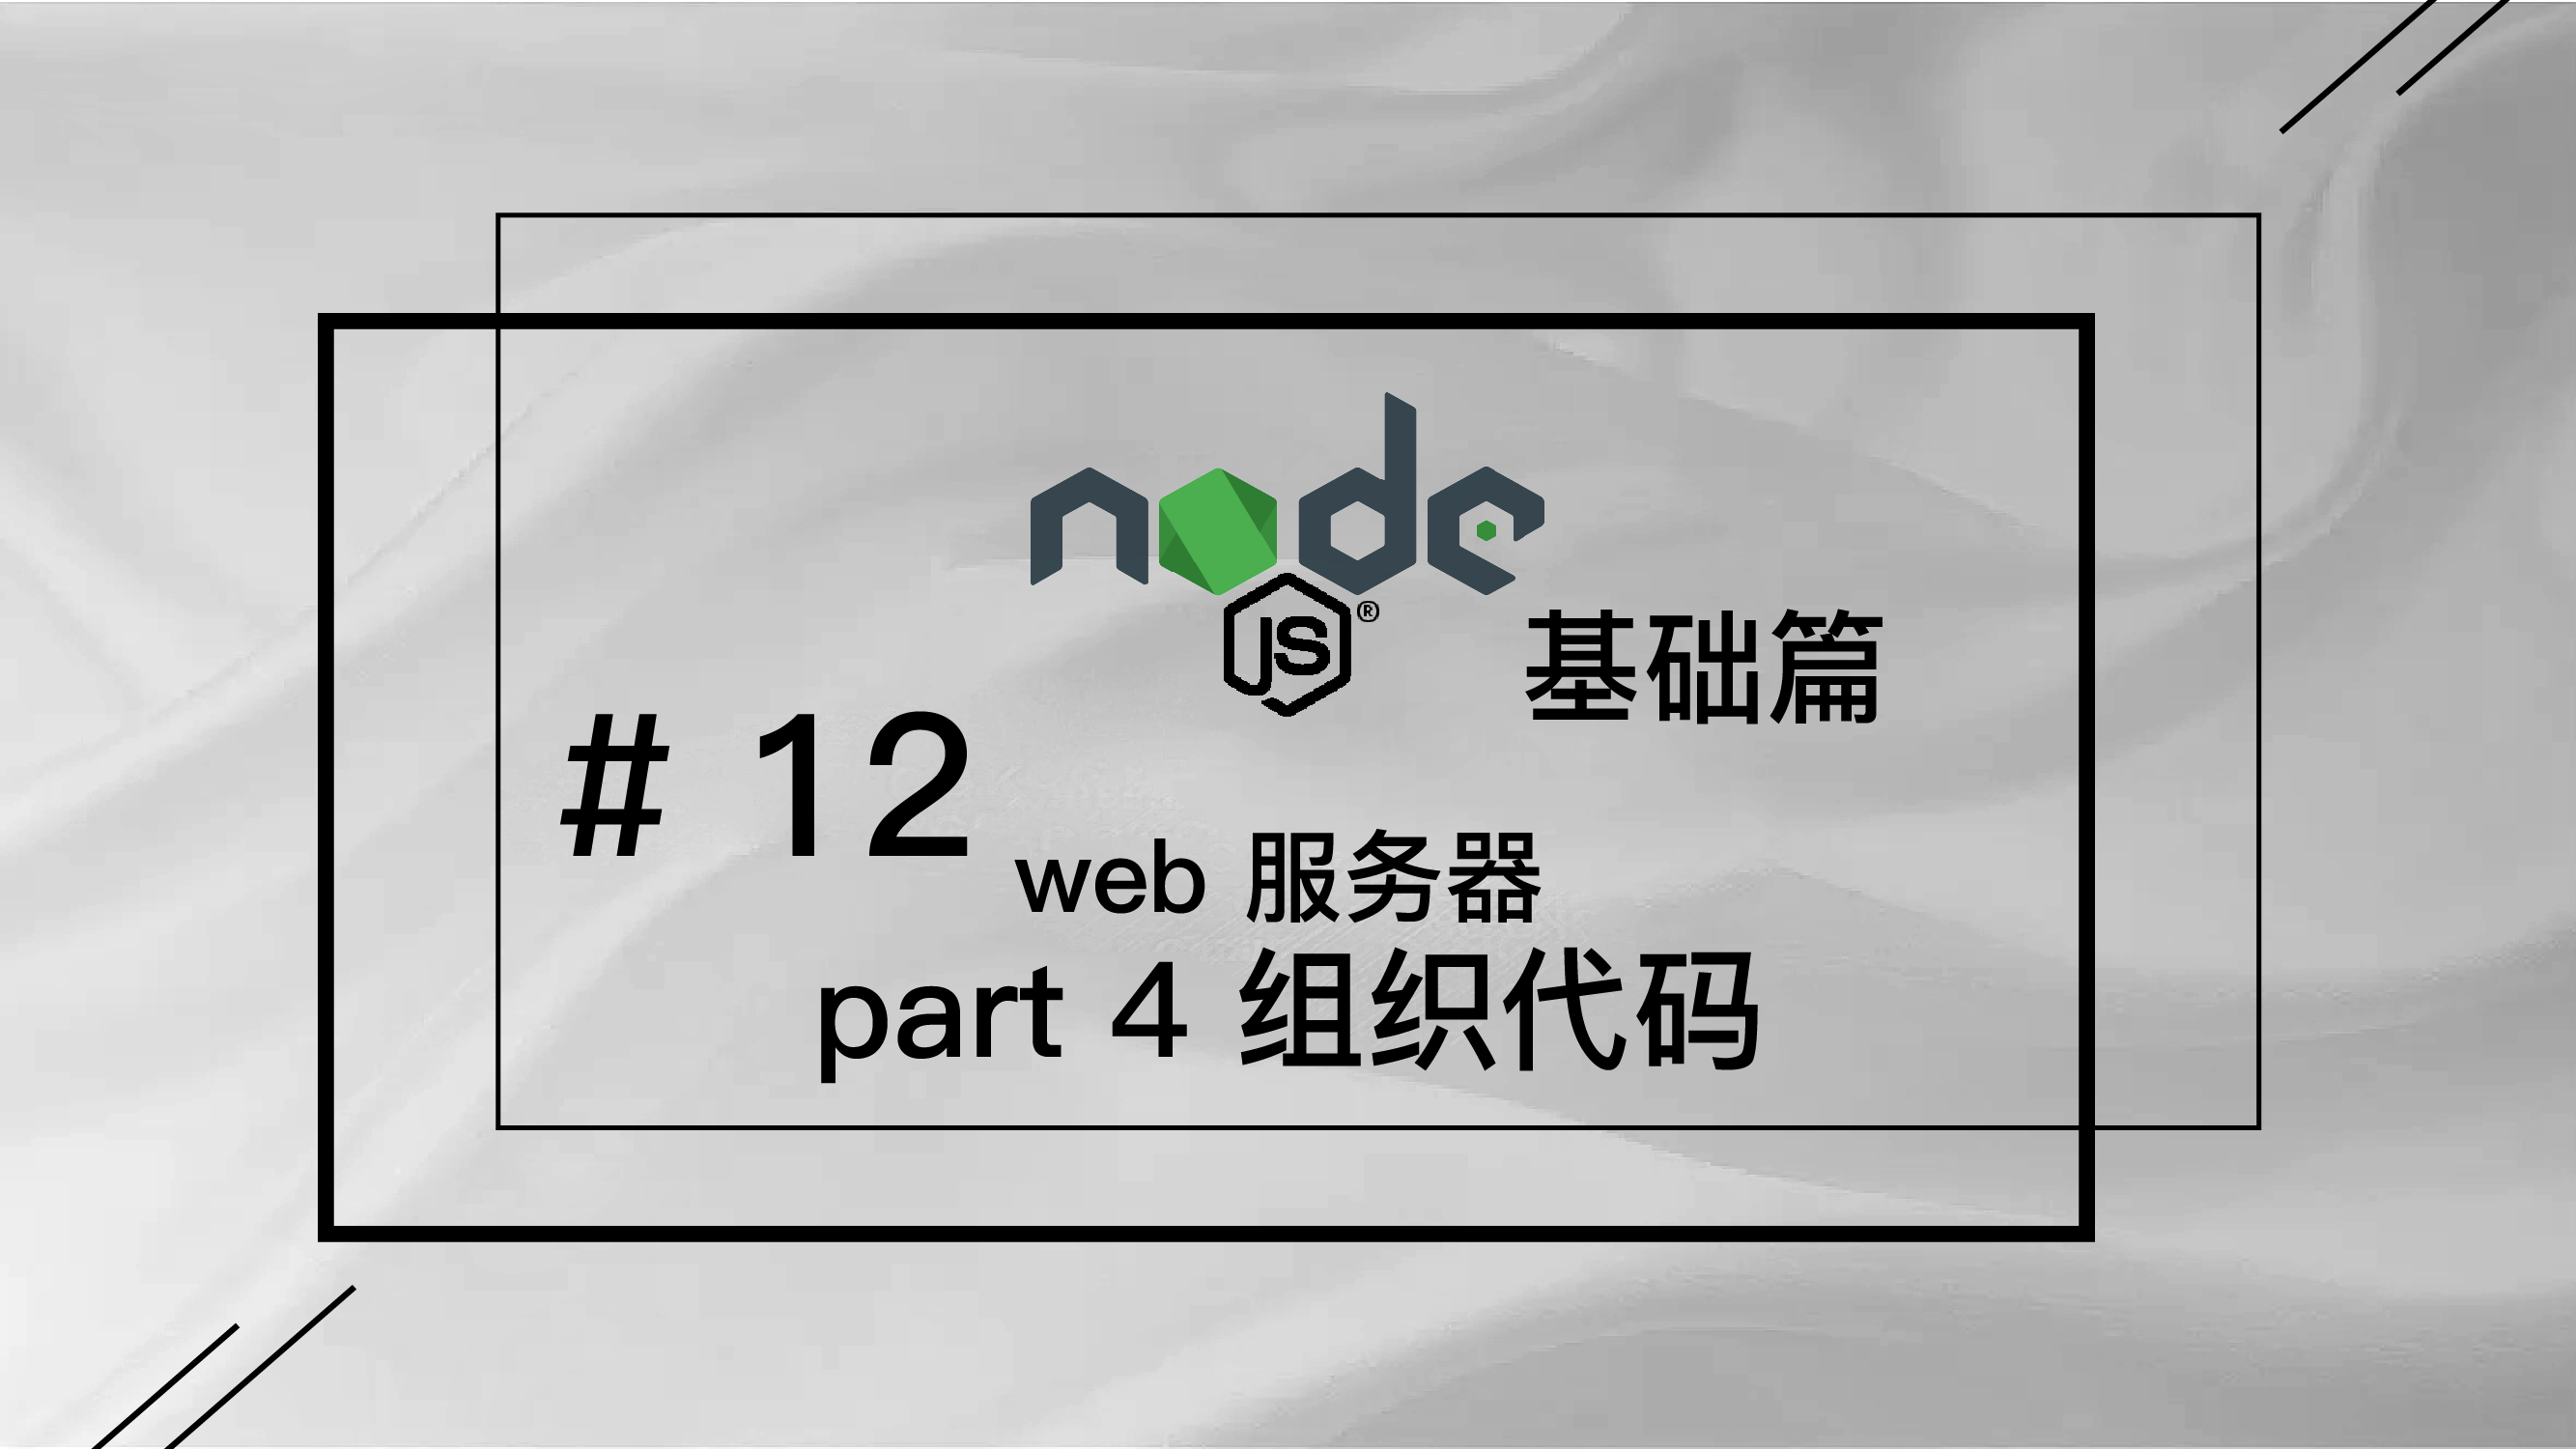 轻松学 Node.js - 基础篇免费视频教程 #12 web 服务器 part 4 用模块化思想组织代码